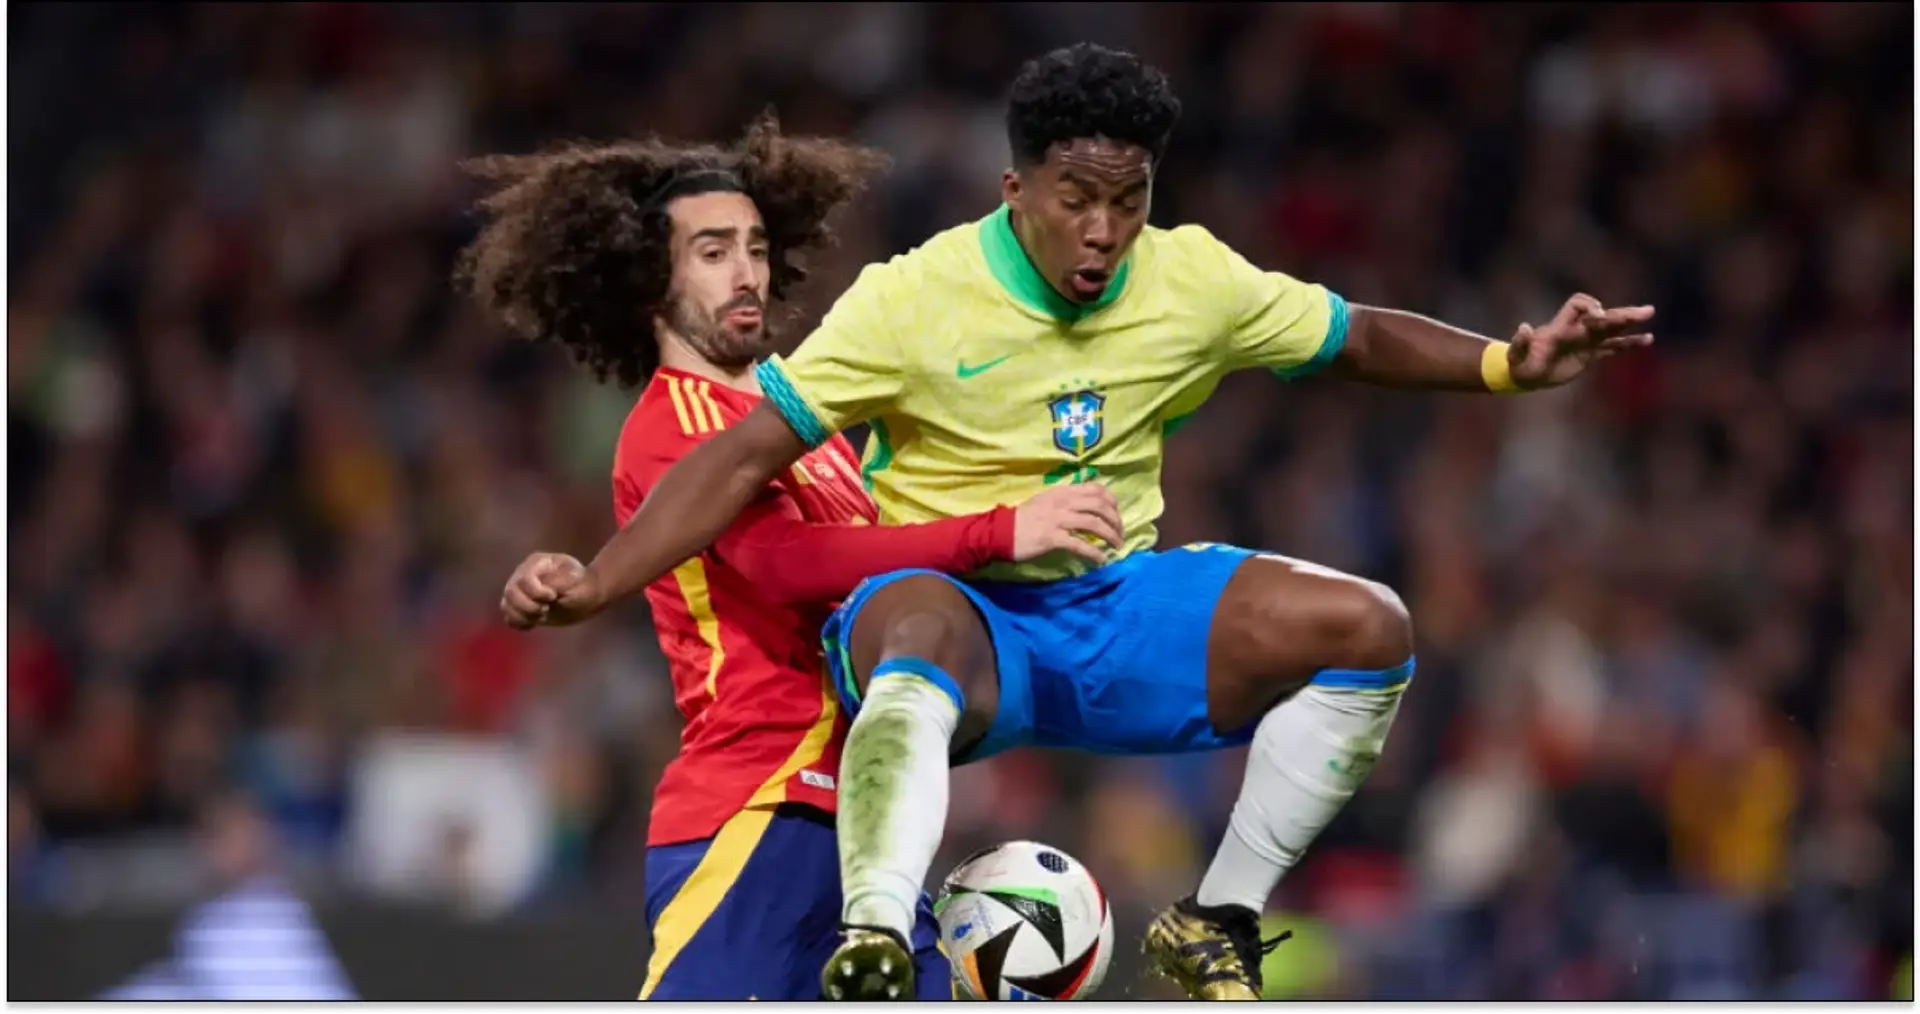 Cucurella wins second Spain cap — how did he fare in insane Brazil draw?